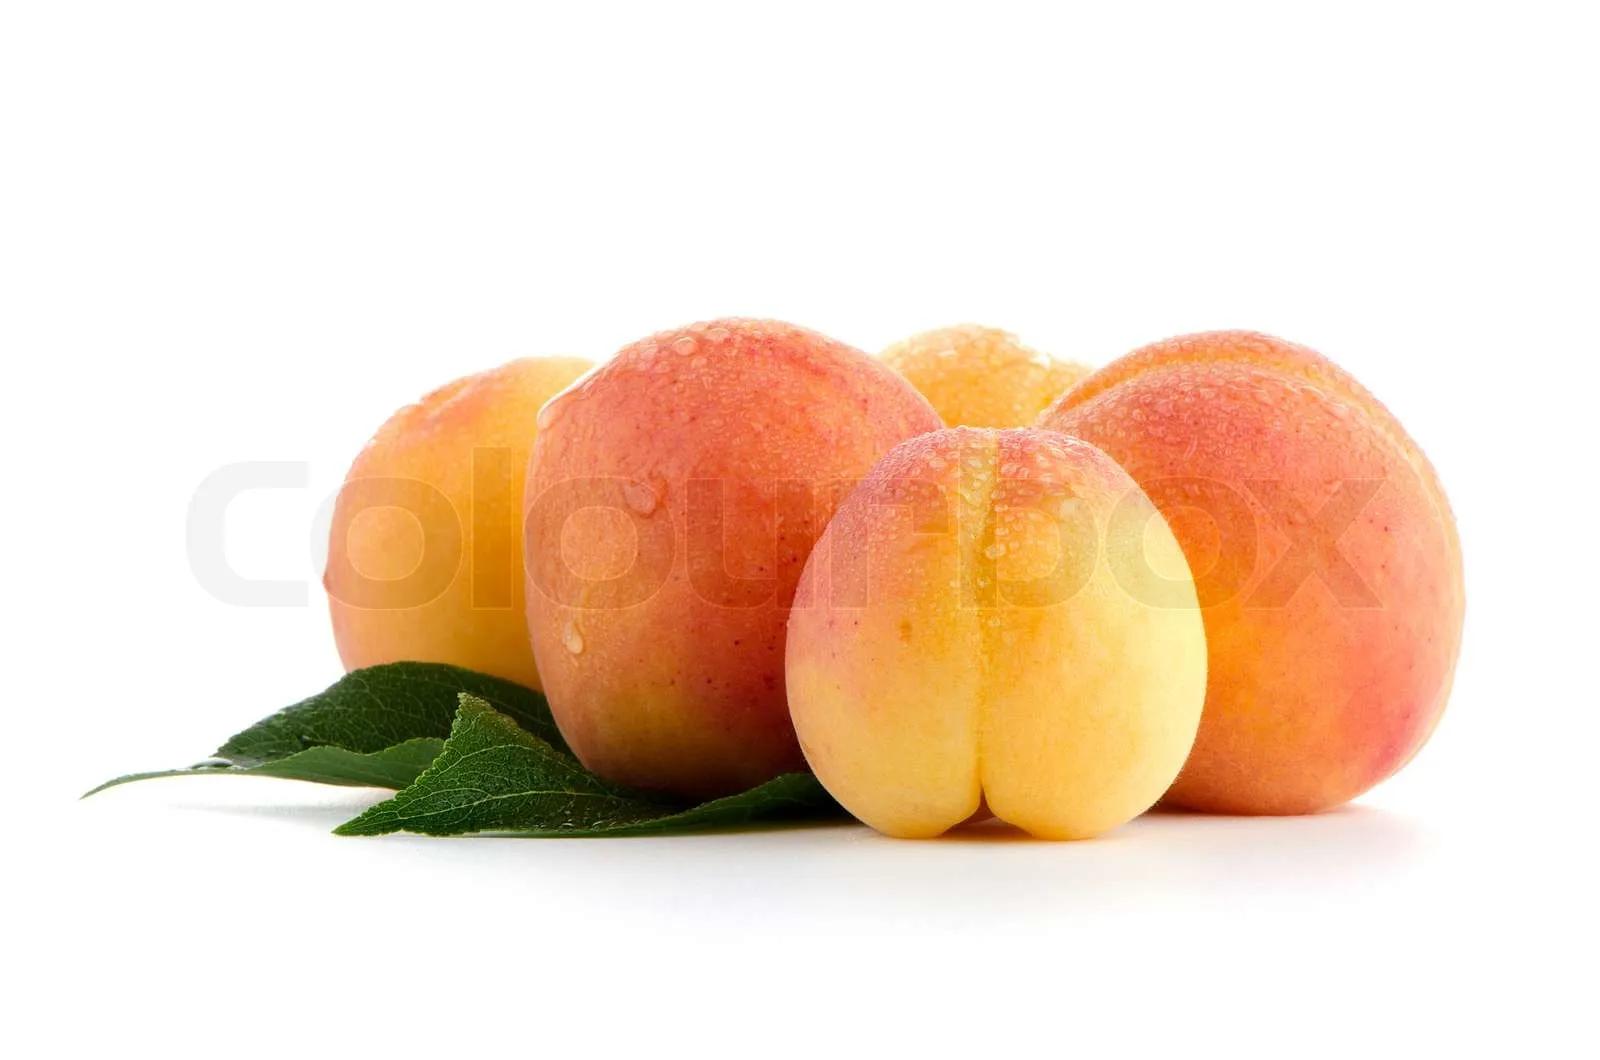 Süße Pfirsiche mit Blättern | Stock Bild | Colourbox